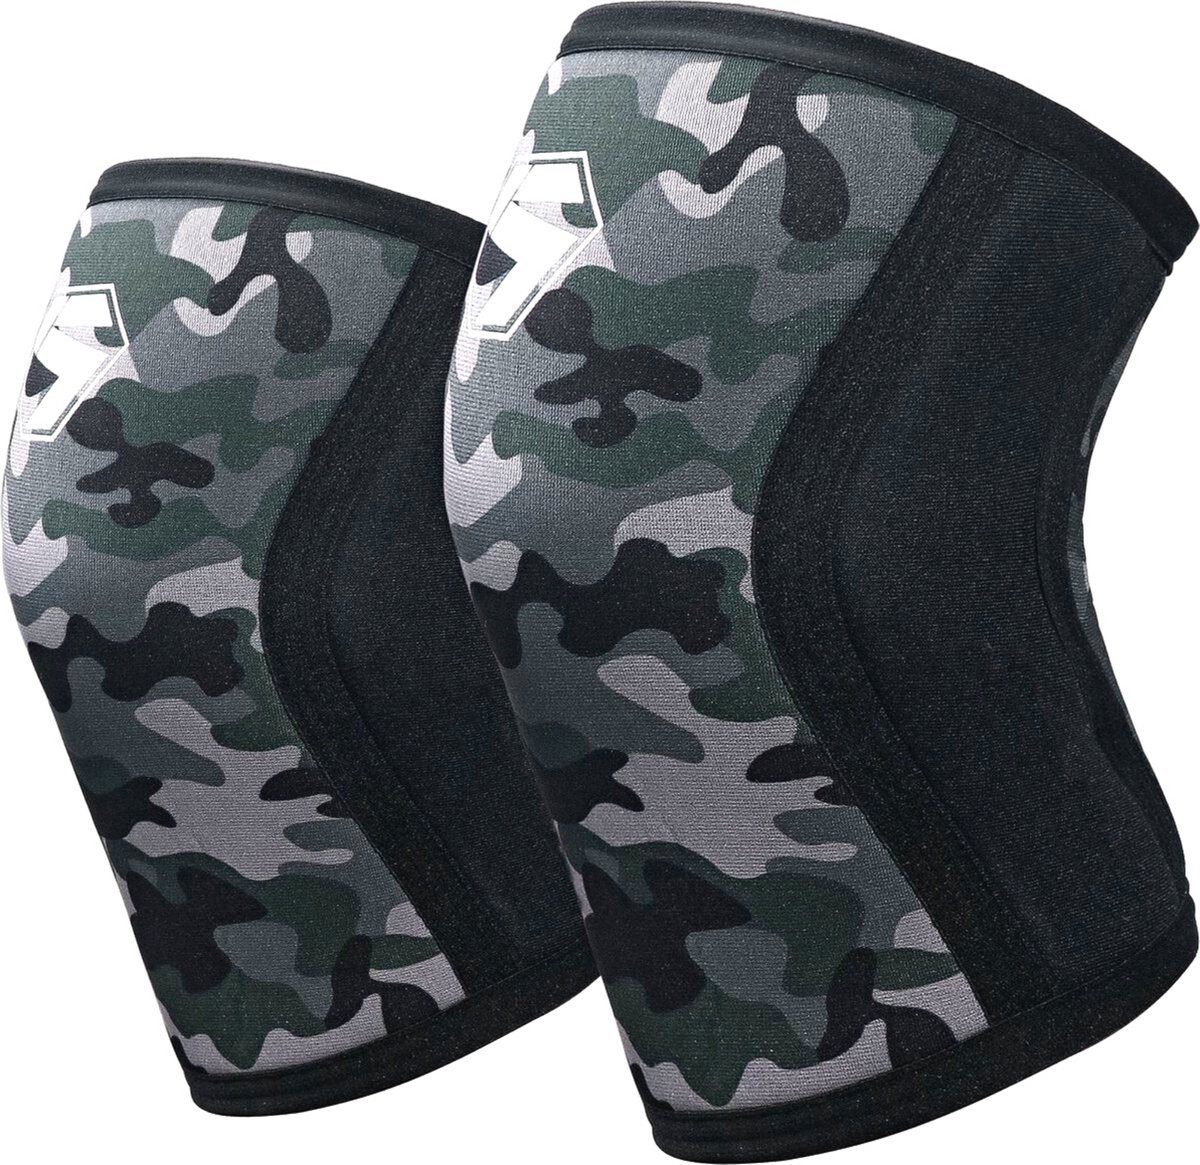 2 Stuks Premium Knee Sleeves - Knie Brace - Kniebandage - Knee Sleeves - Fitness - Crossfit – Knieband - Braces – 7 mm - Maat L